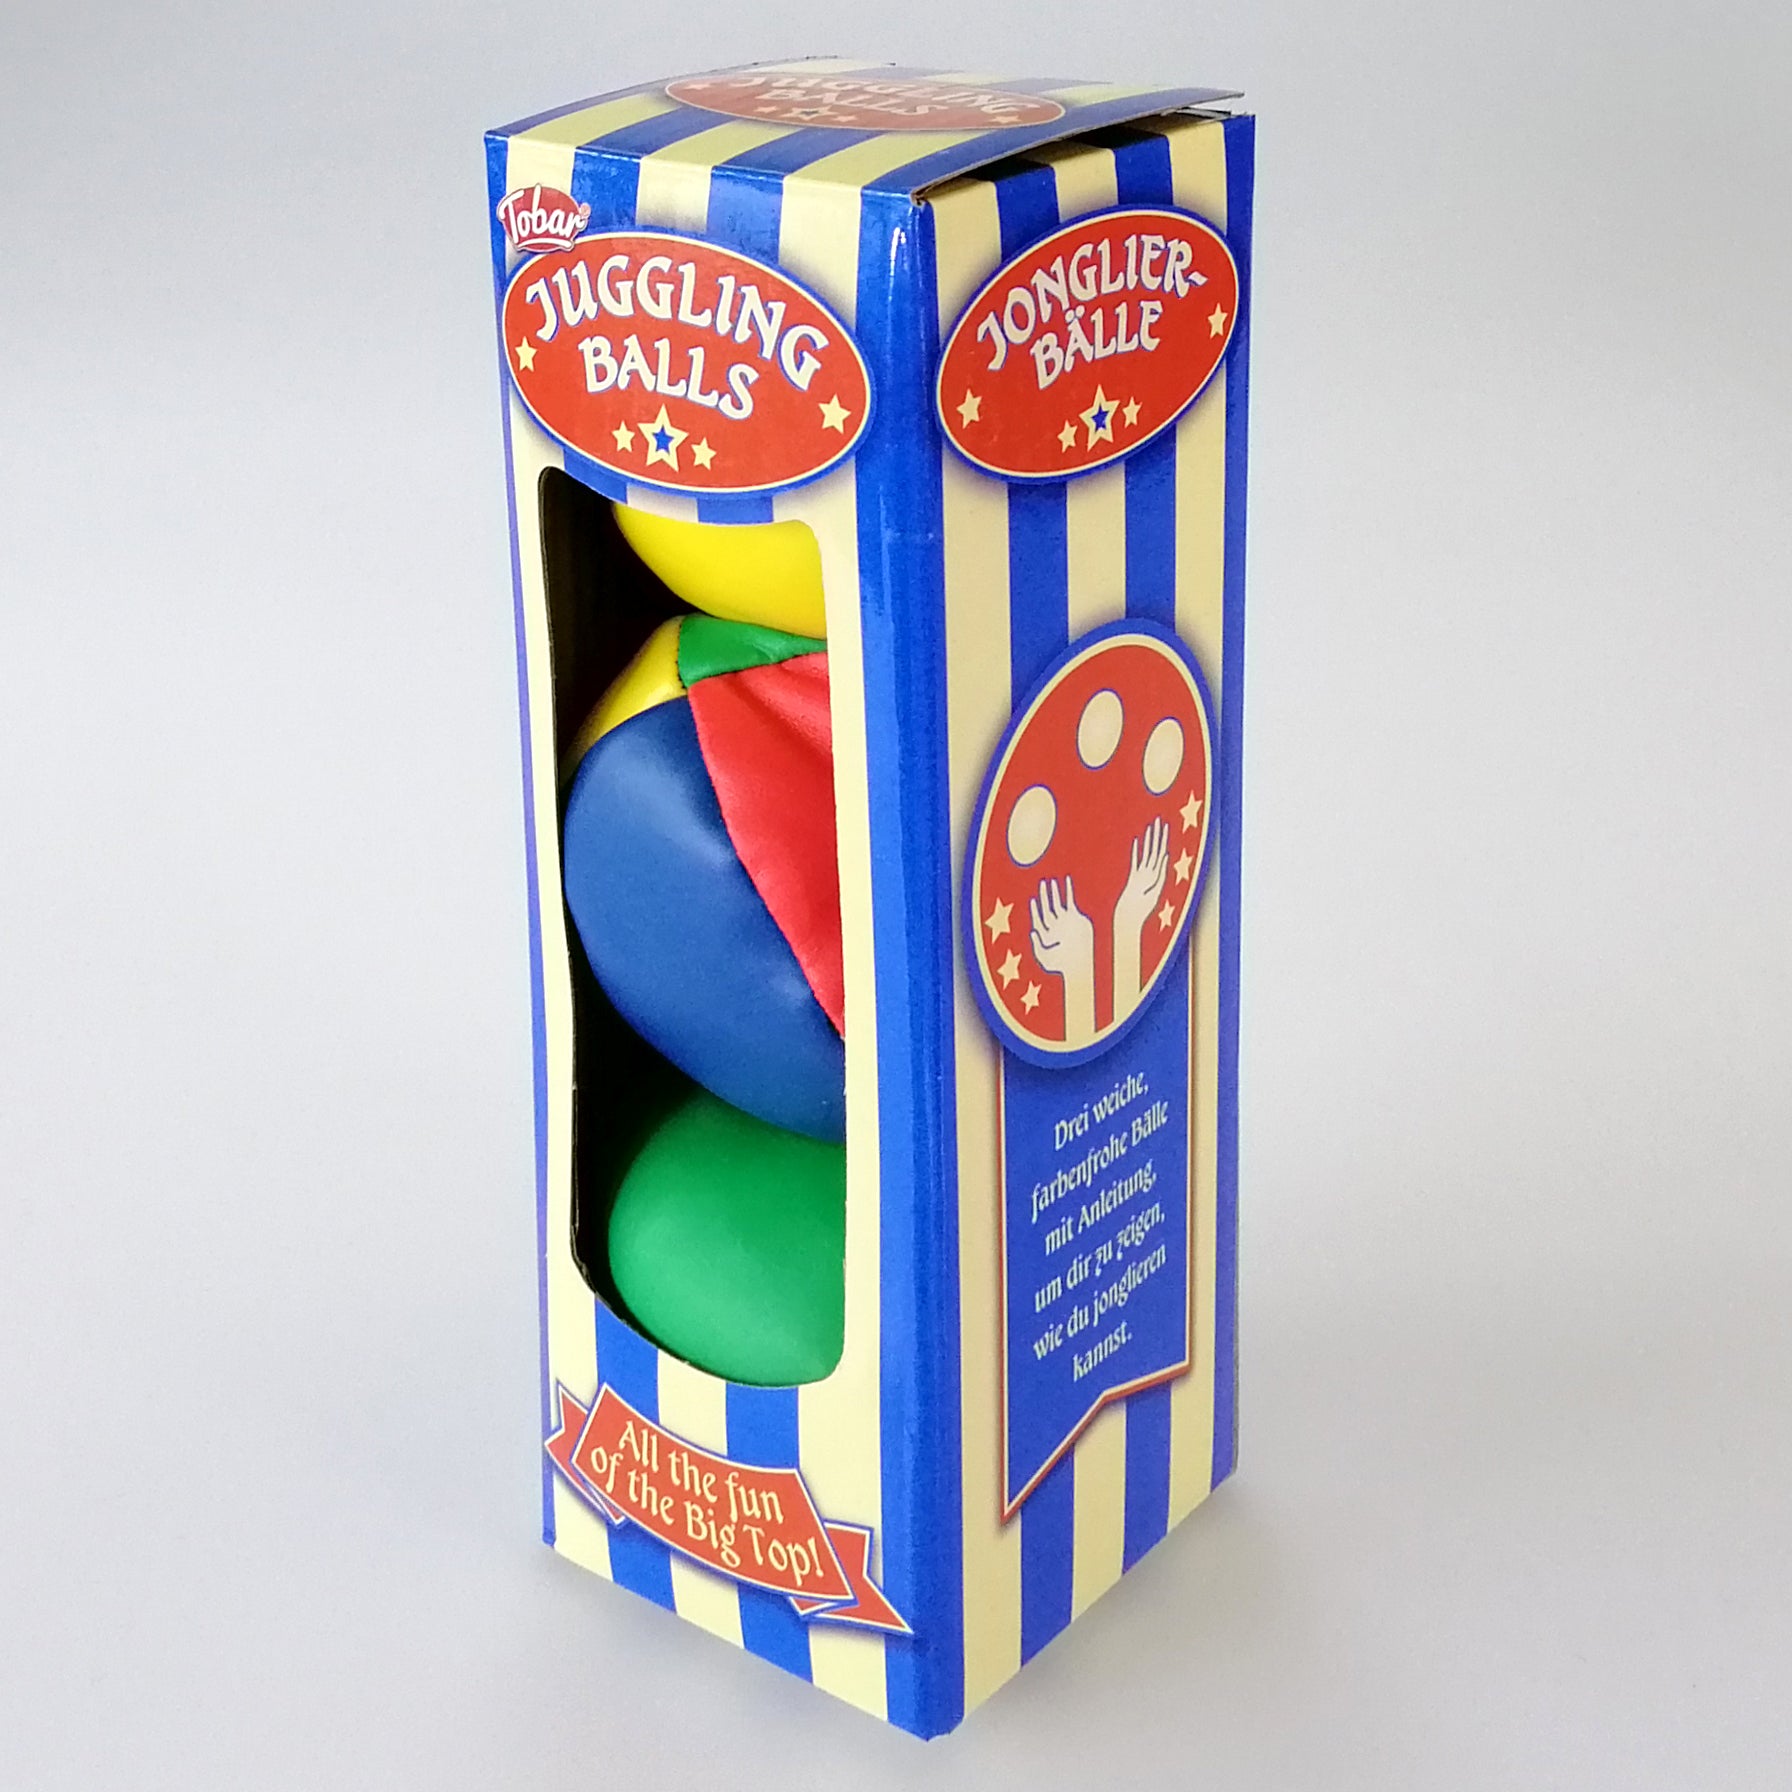 Juggling Balls - Set of 3